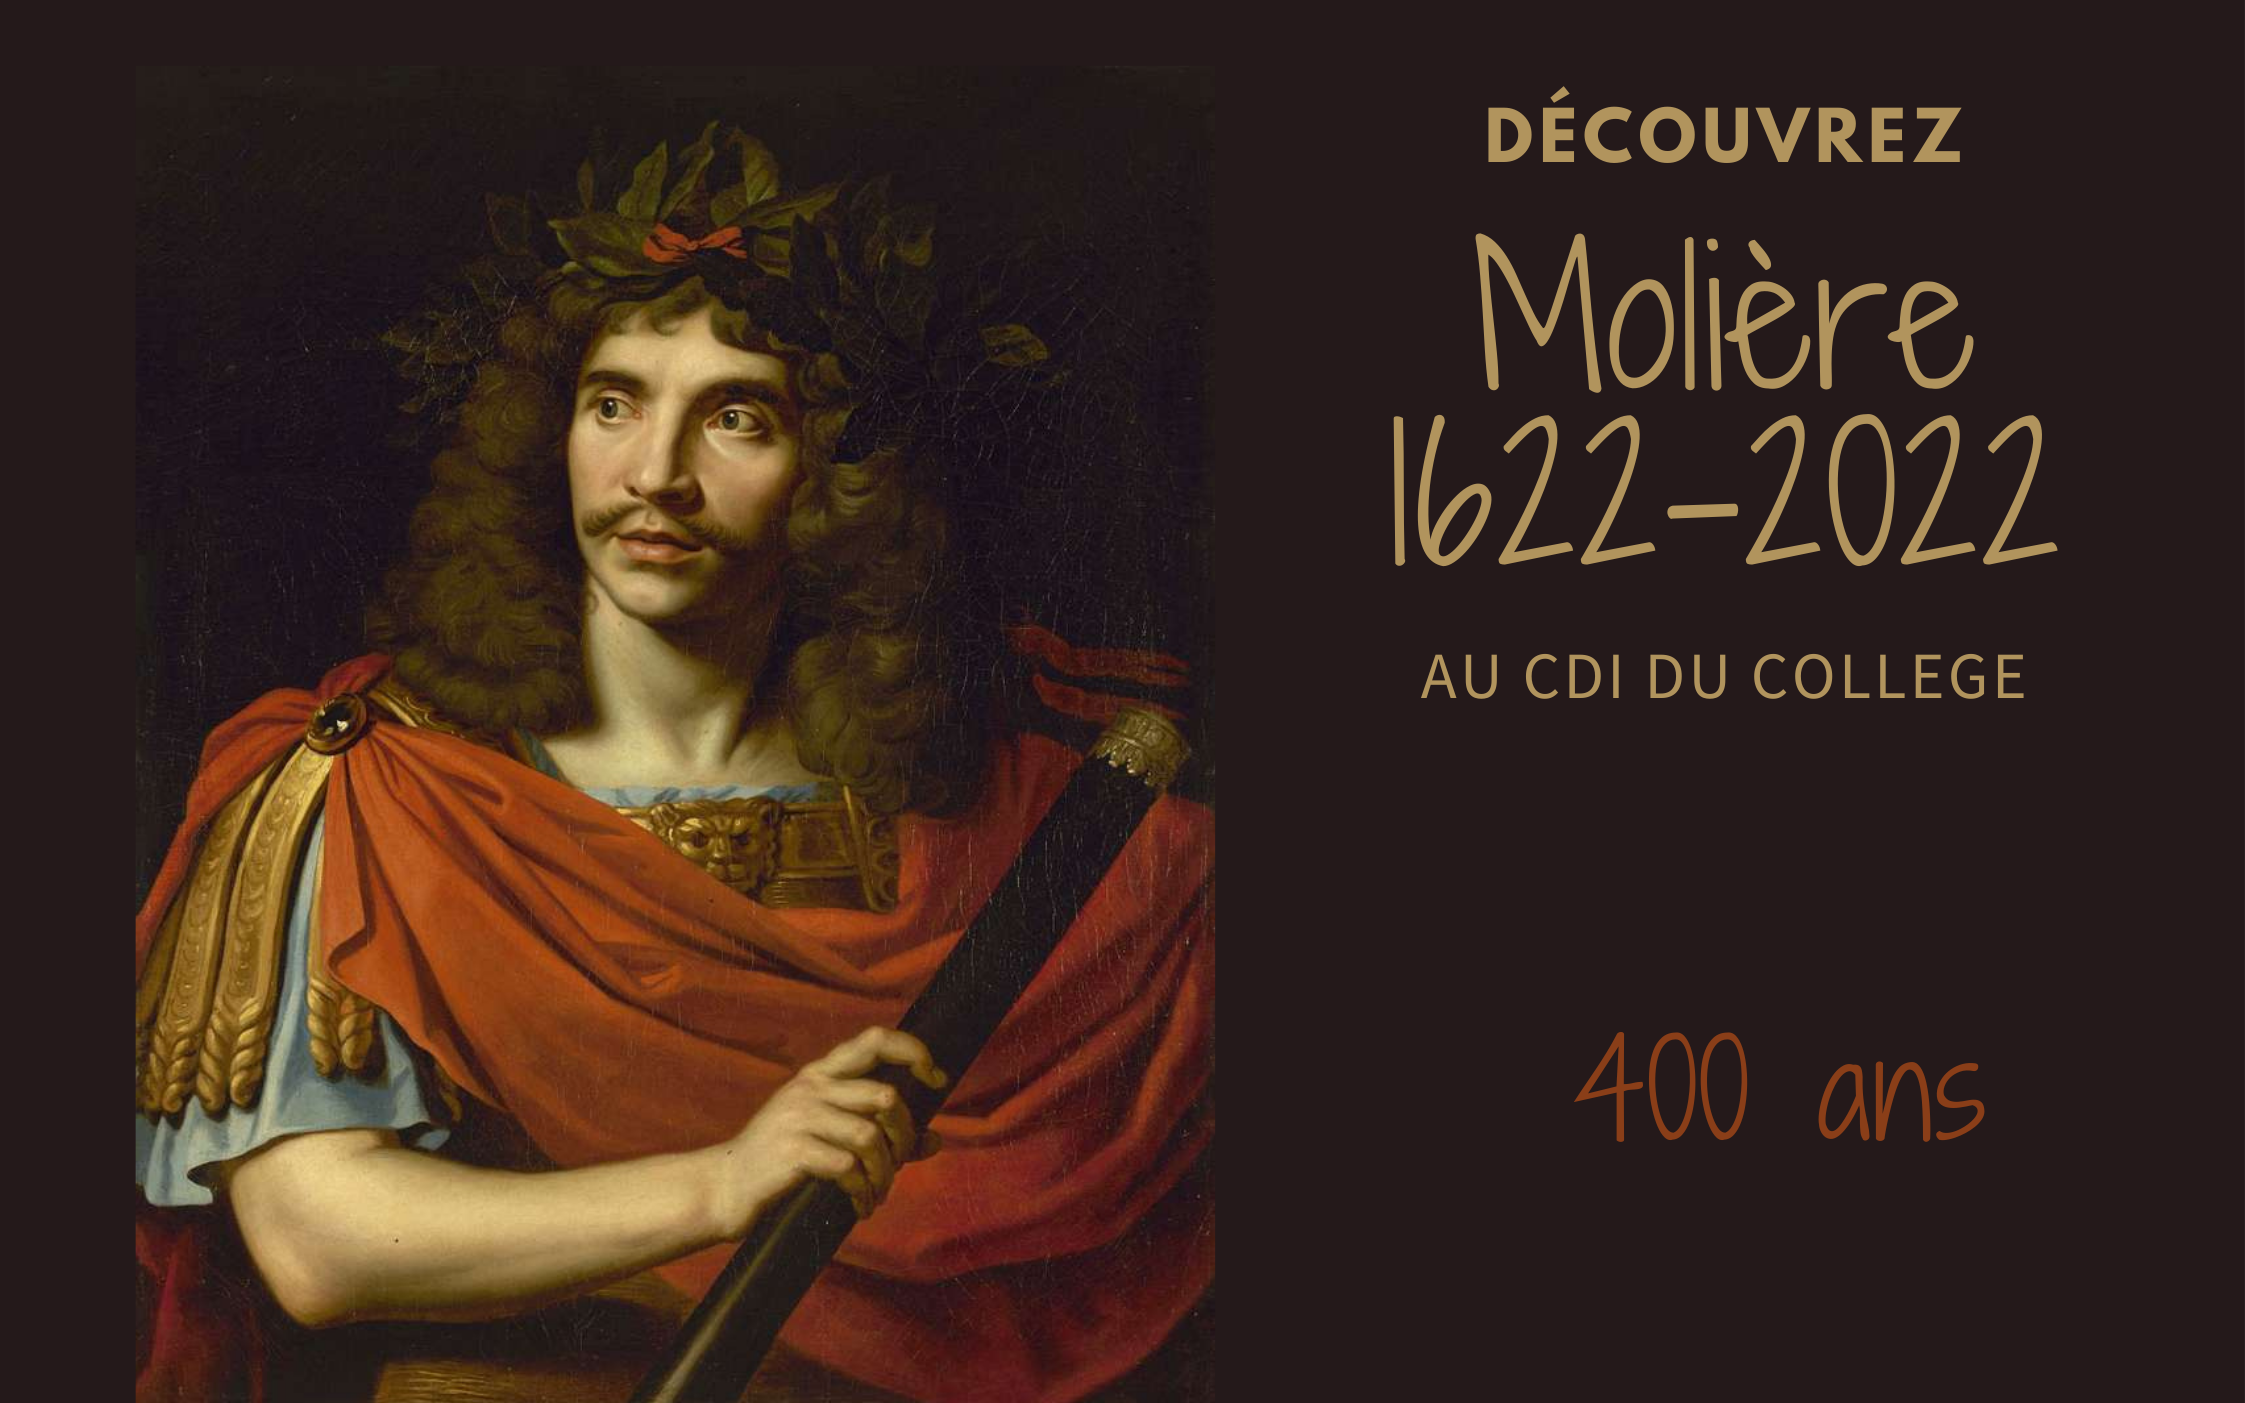 Molière 1622-2022.png